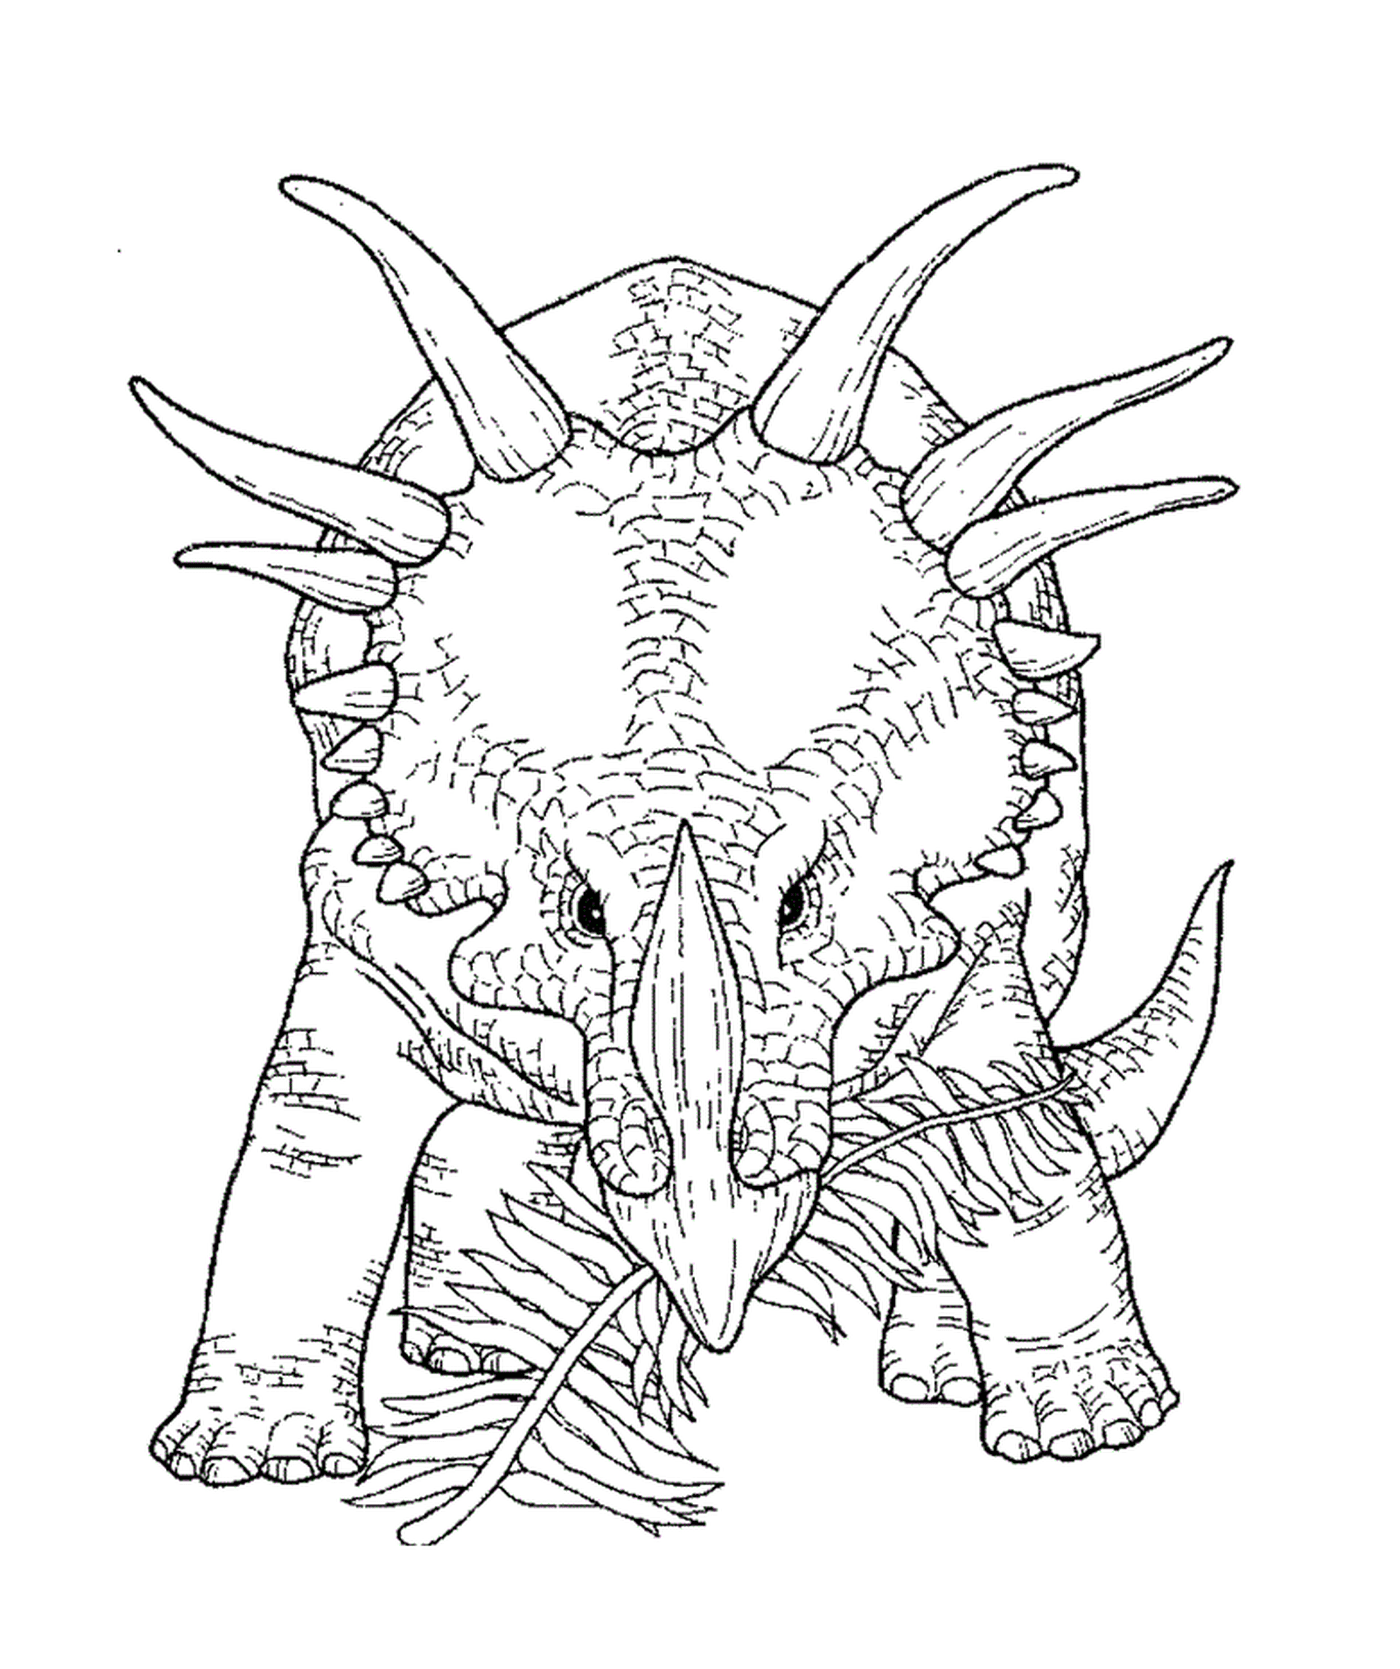  Triceratops adultos em exposição 